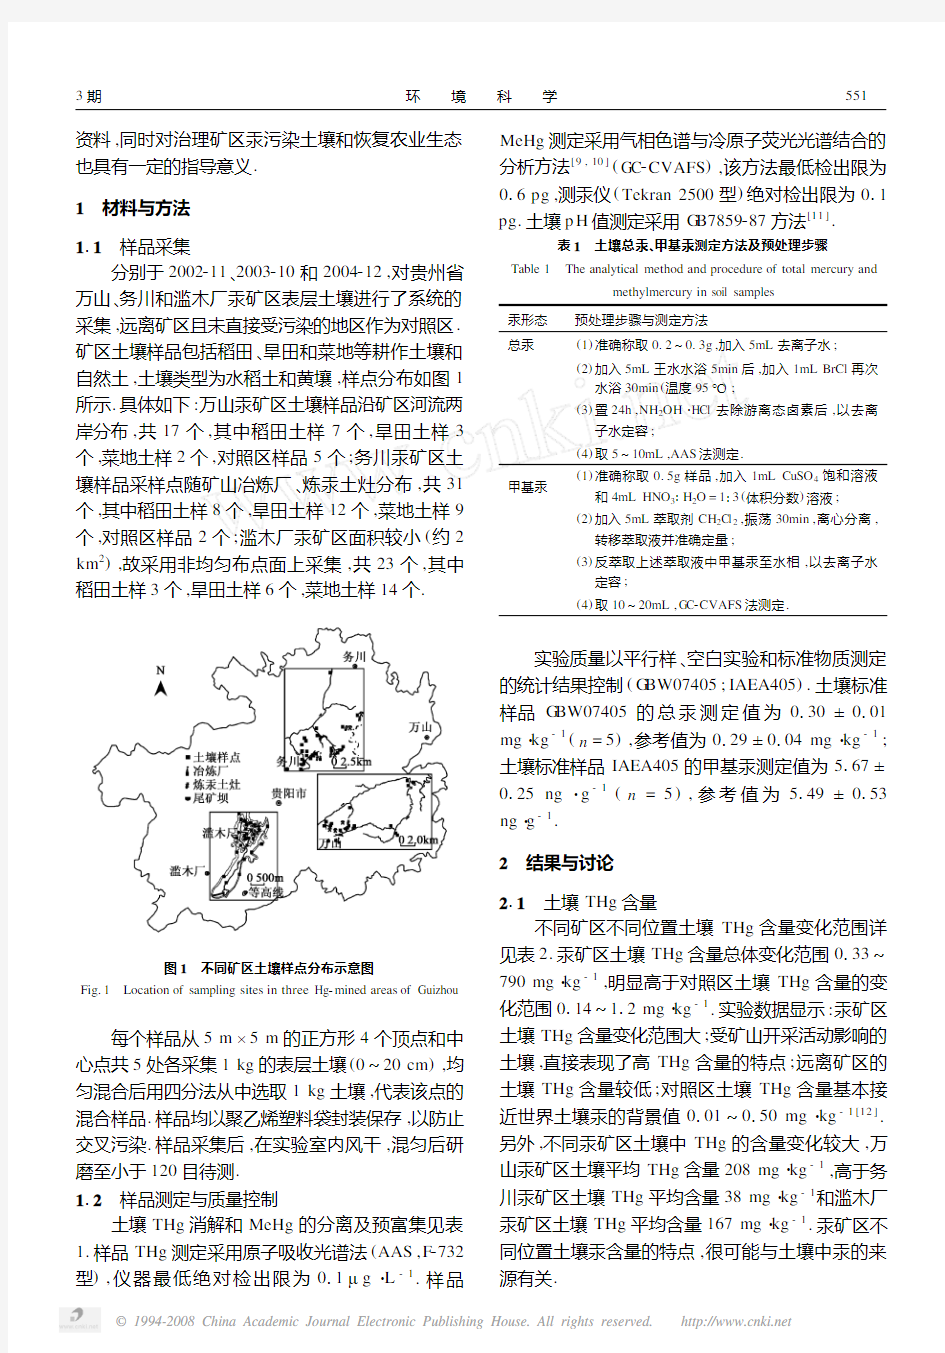 贵州汞矿矿区不同位置土壤中总汞和甲基汞污染特征的研究